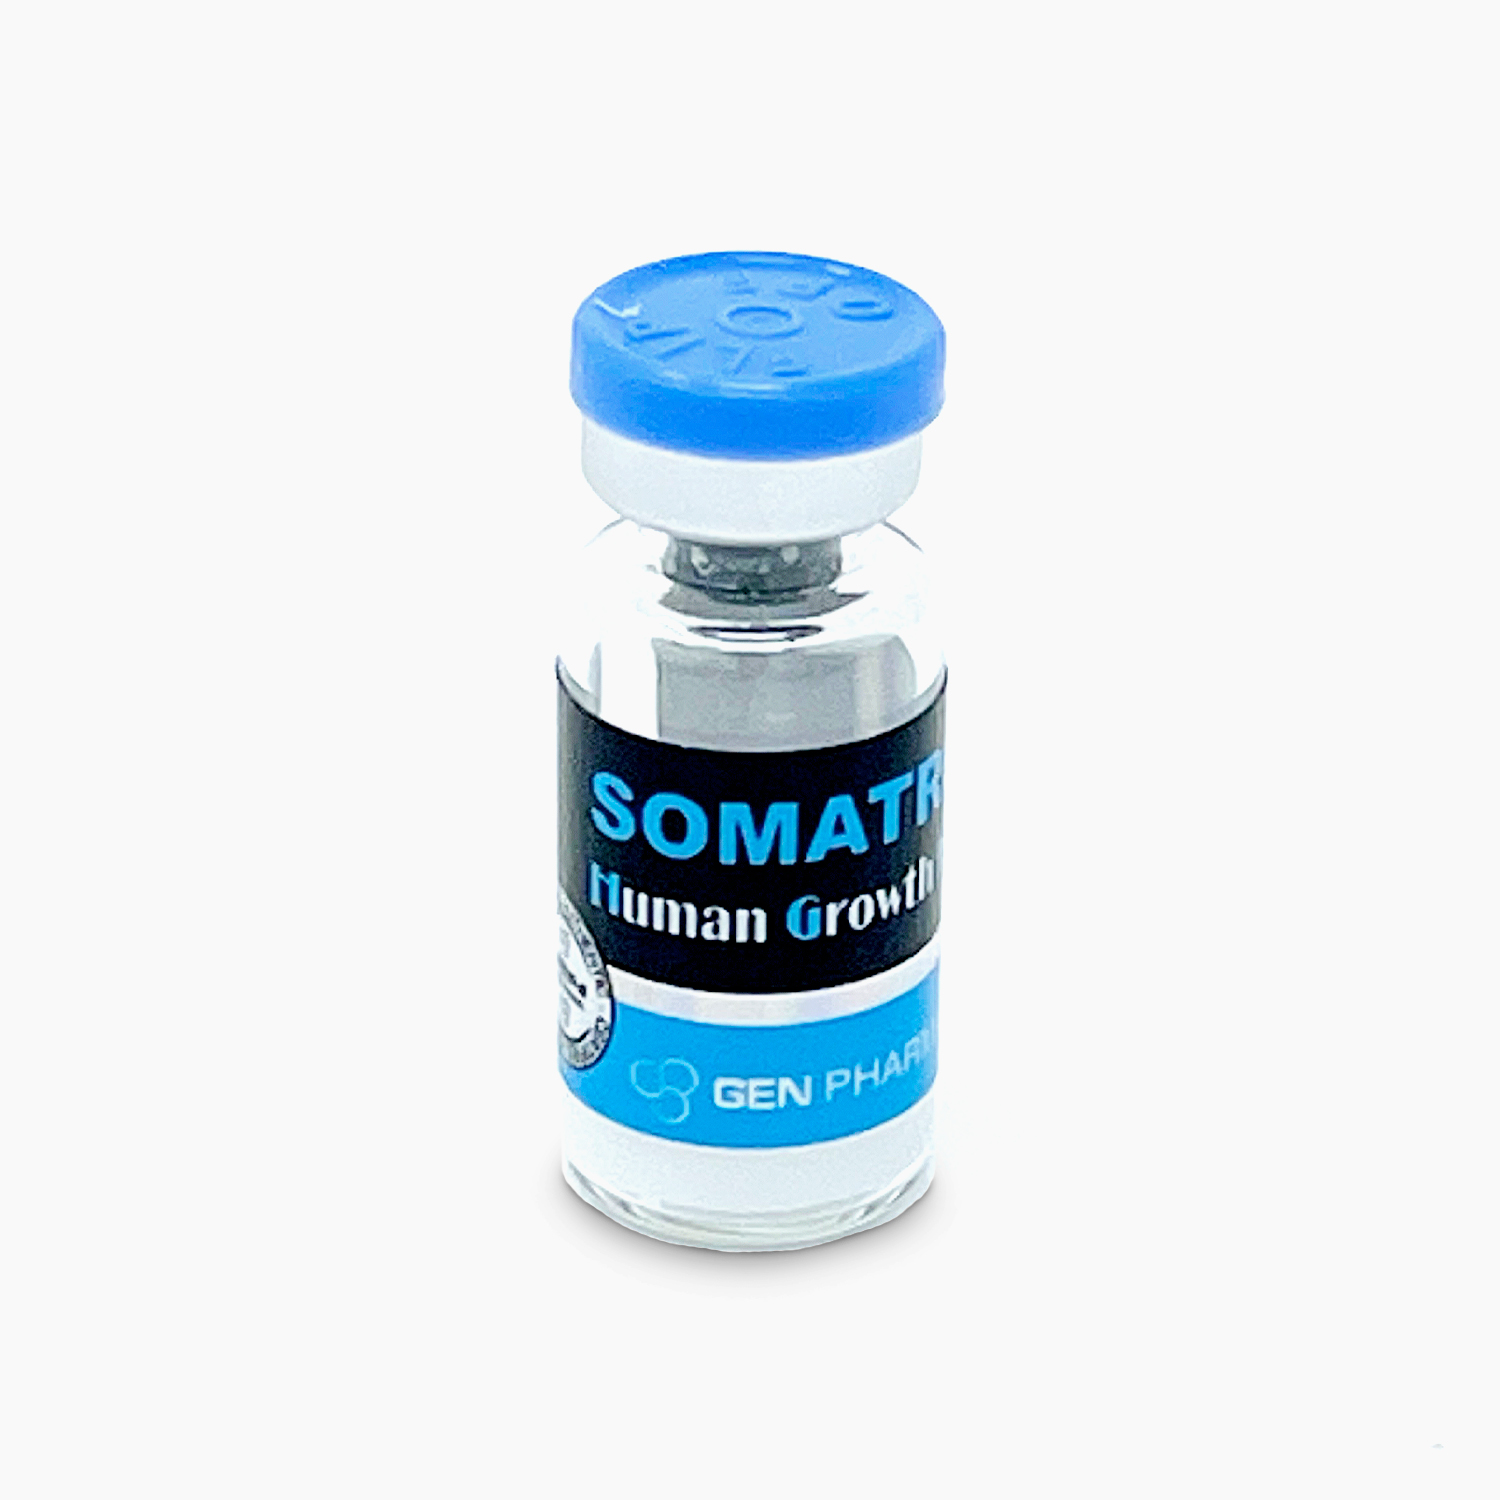 Gen-Pharma Somatropin